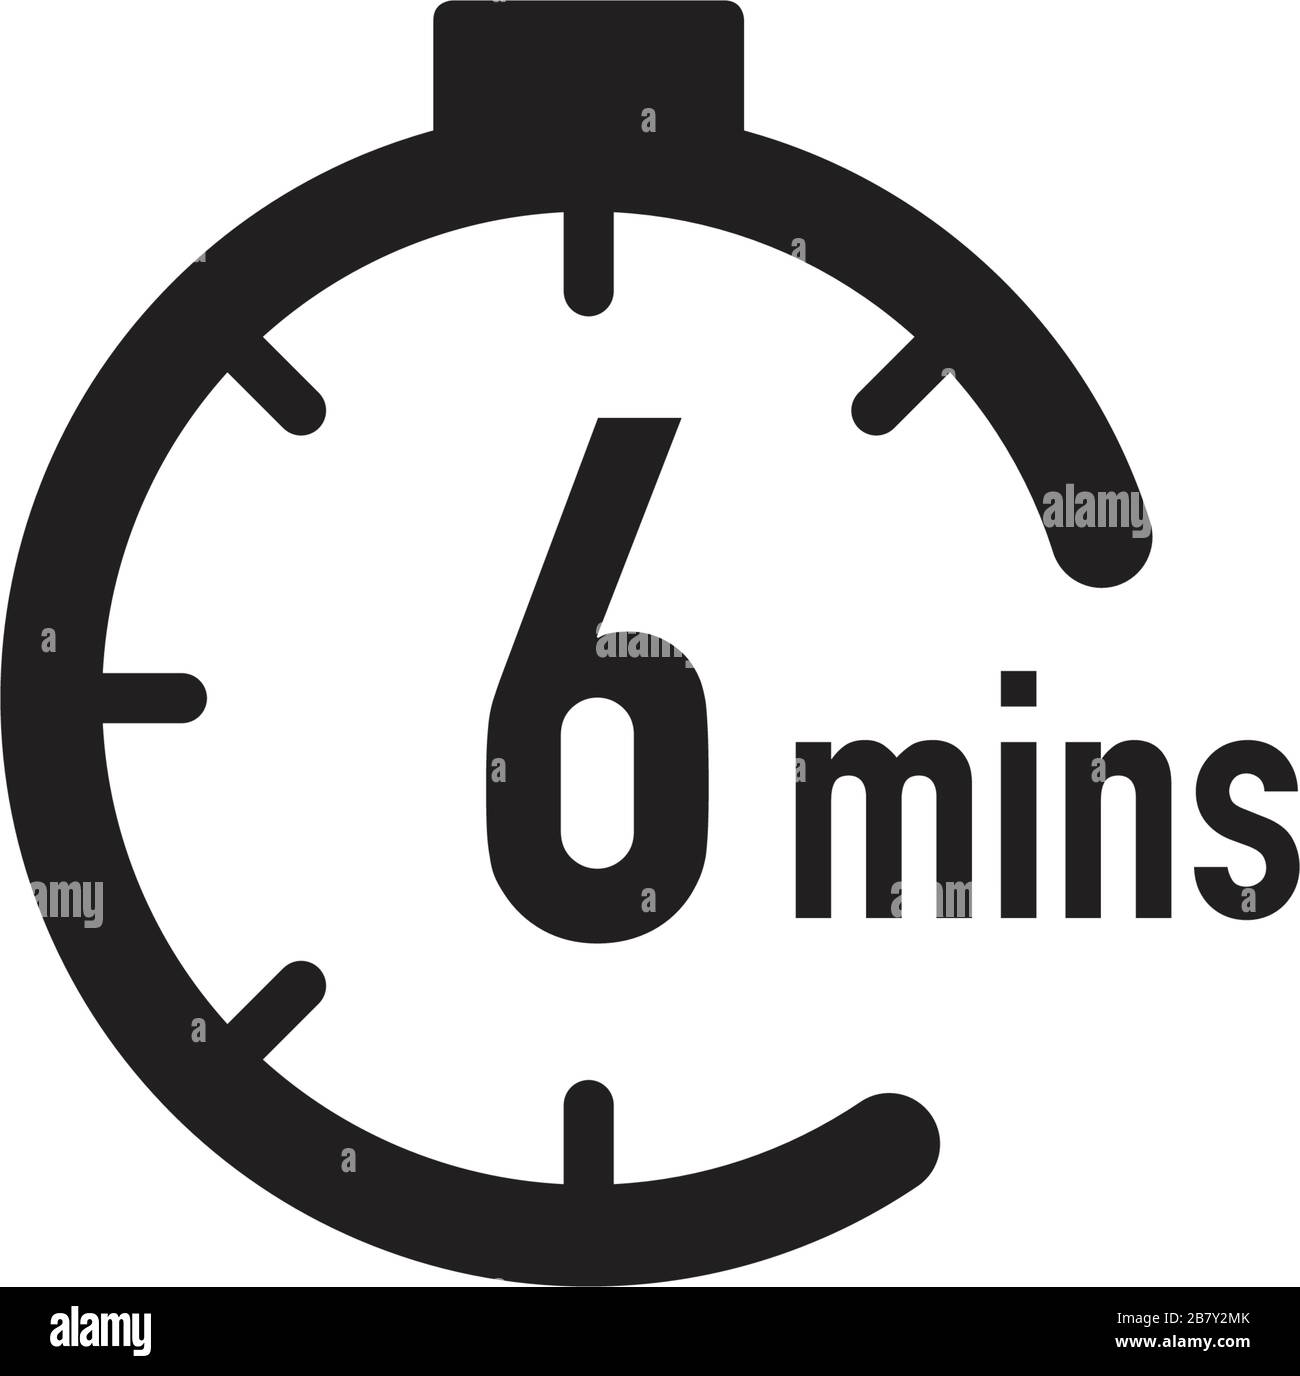 Đồng hồ bấm giờ 6 phút là một công cụ hữu hiệu trong việc tập trung và quản lý thời gian. Với tính năng đếm ngược và hiển thị thời gian chính xác, bạn sẽ có thể tập trung vào công việc của mình một cách tối đa. Hãy nhấn vào ảnh ngay để trải nghiệm tính năng tuyệt vời của đồng hồ bấm giờ này.